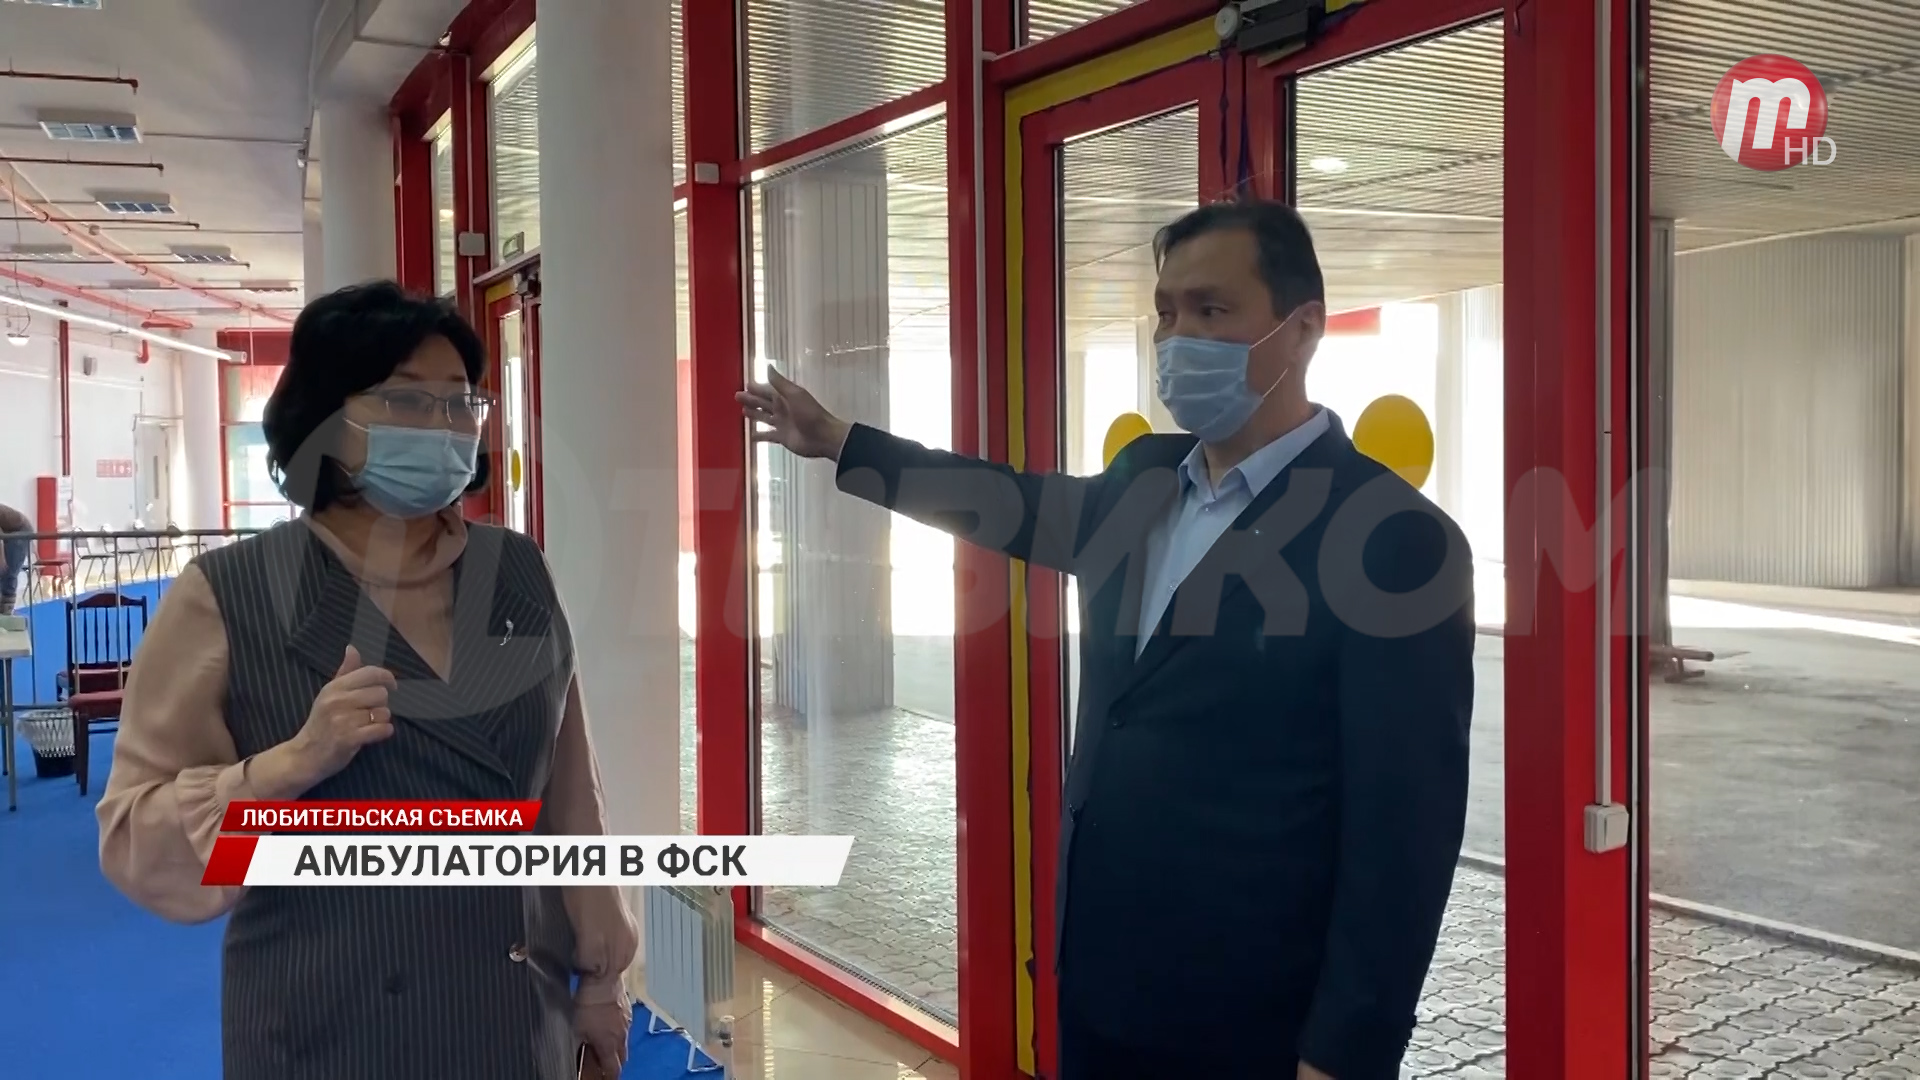 В Улан-Удэ в ФСК развёрнут центр амбулаторной помощи больным с ОРВИ и подозрением на COVID-19